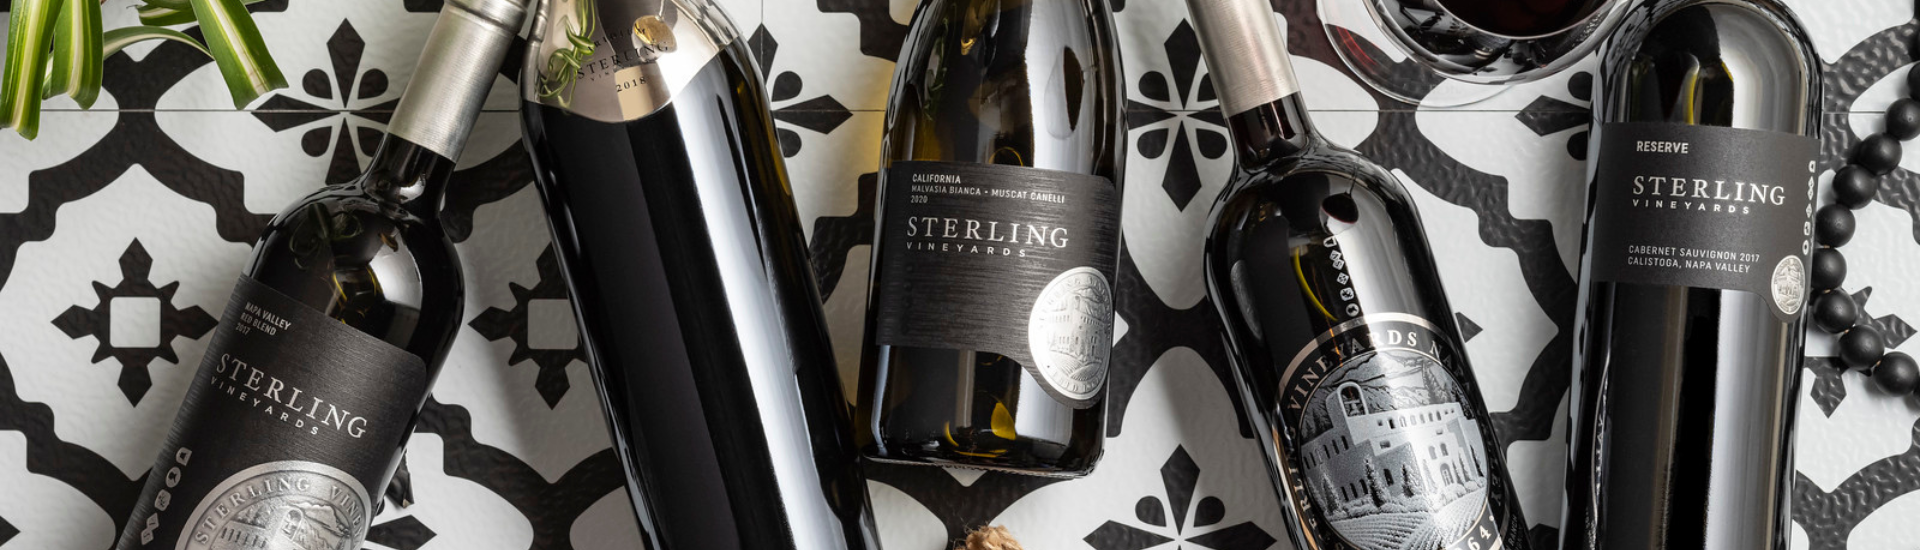 Sterling Vineyard wines